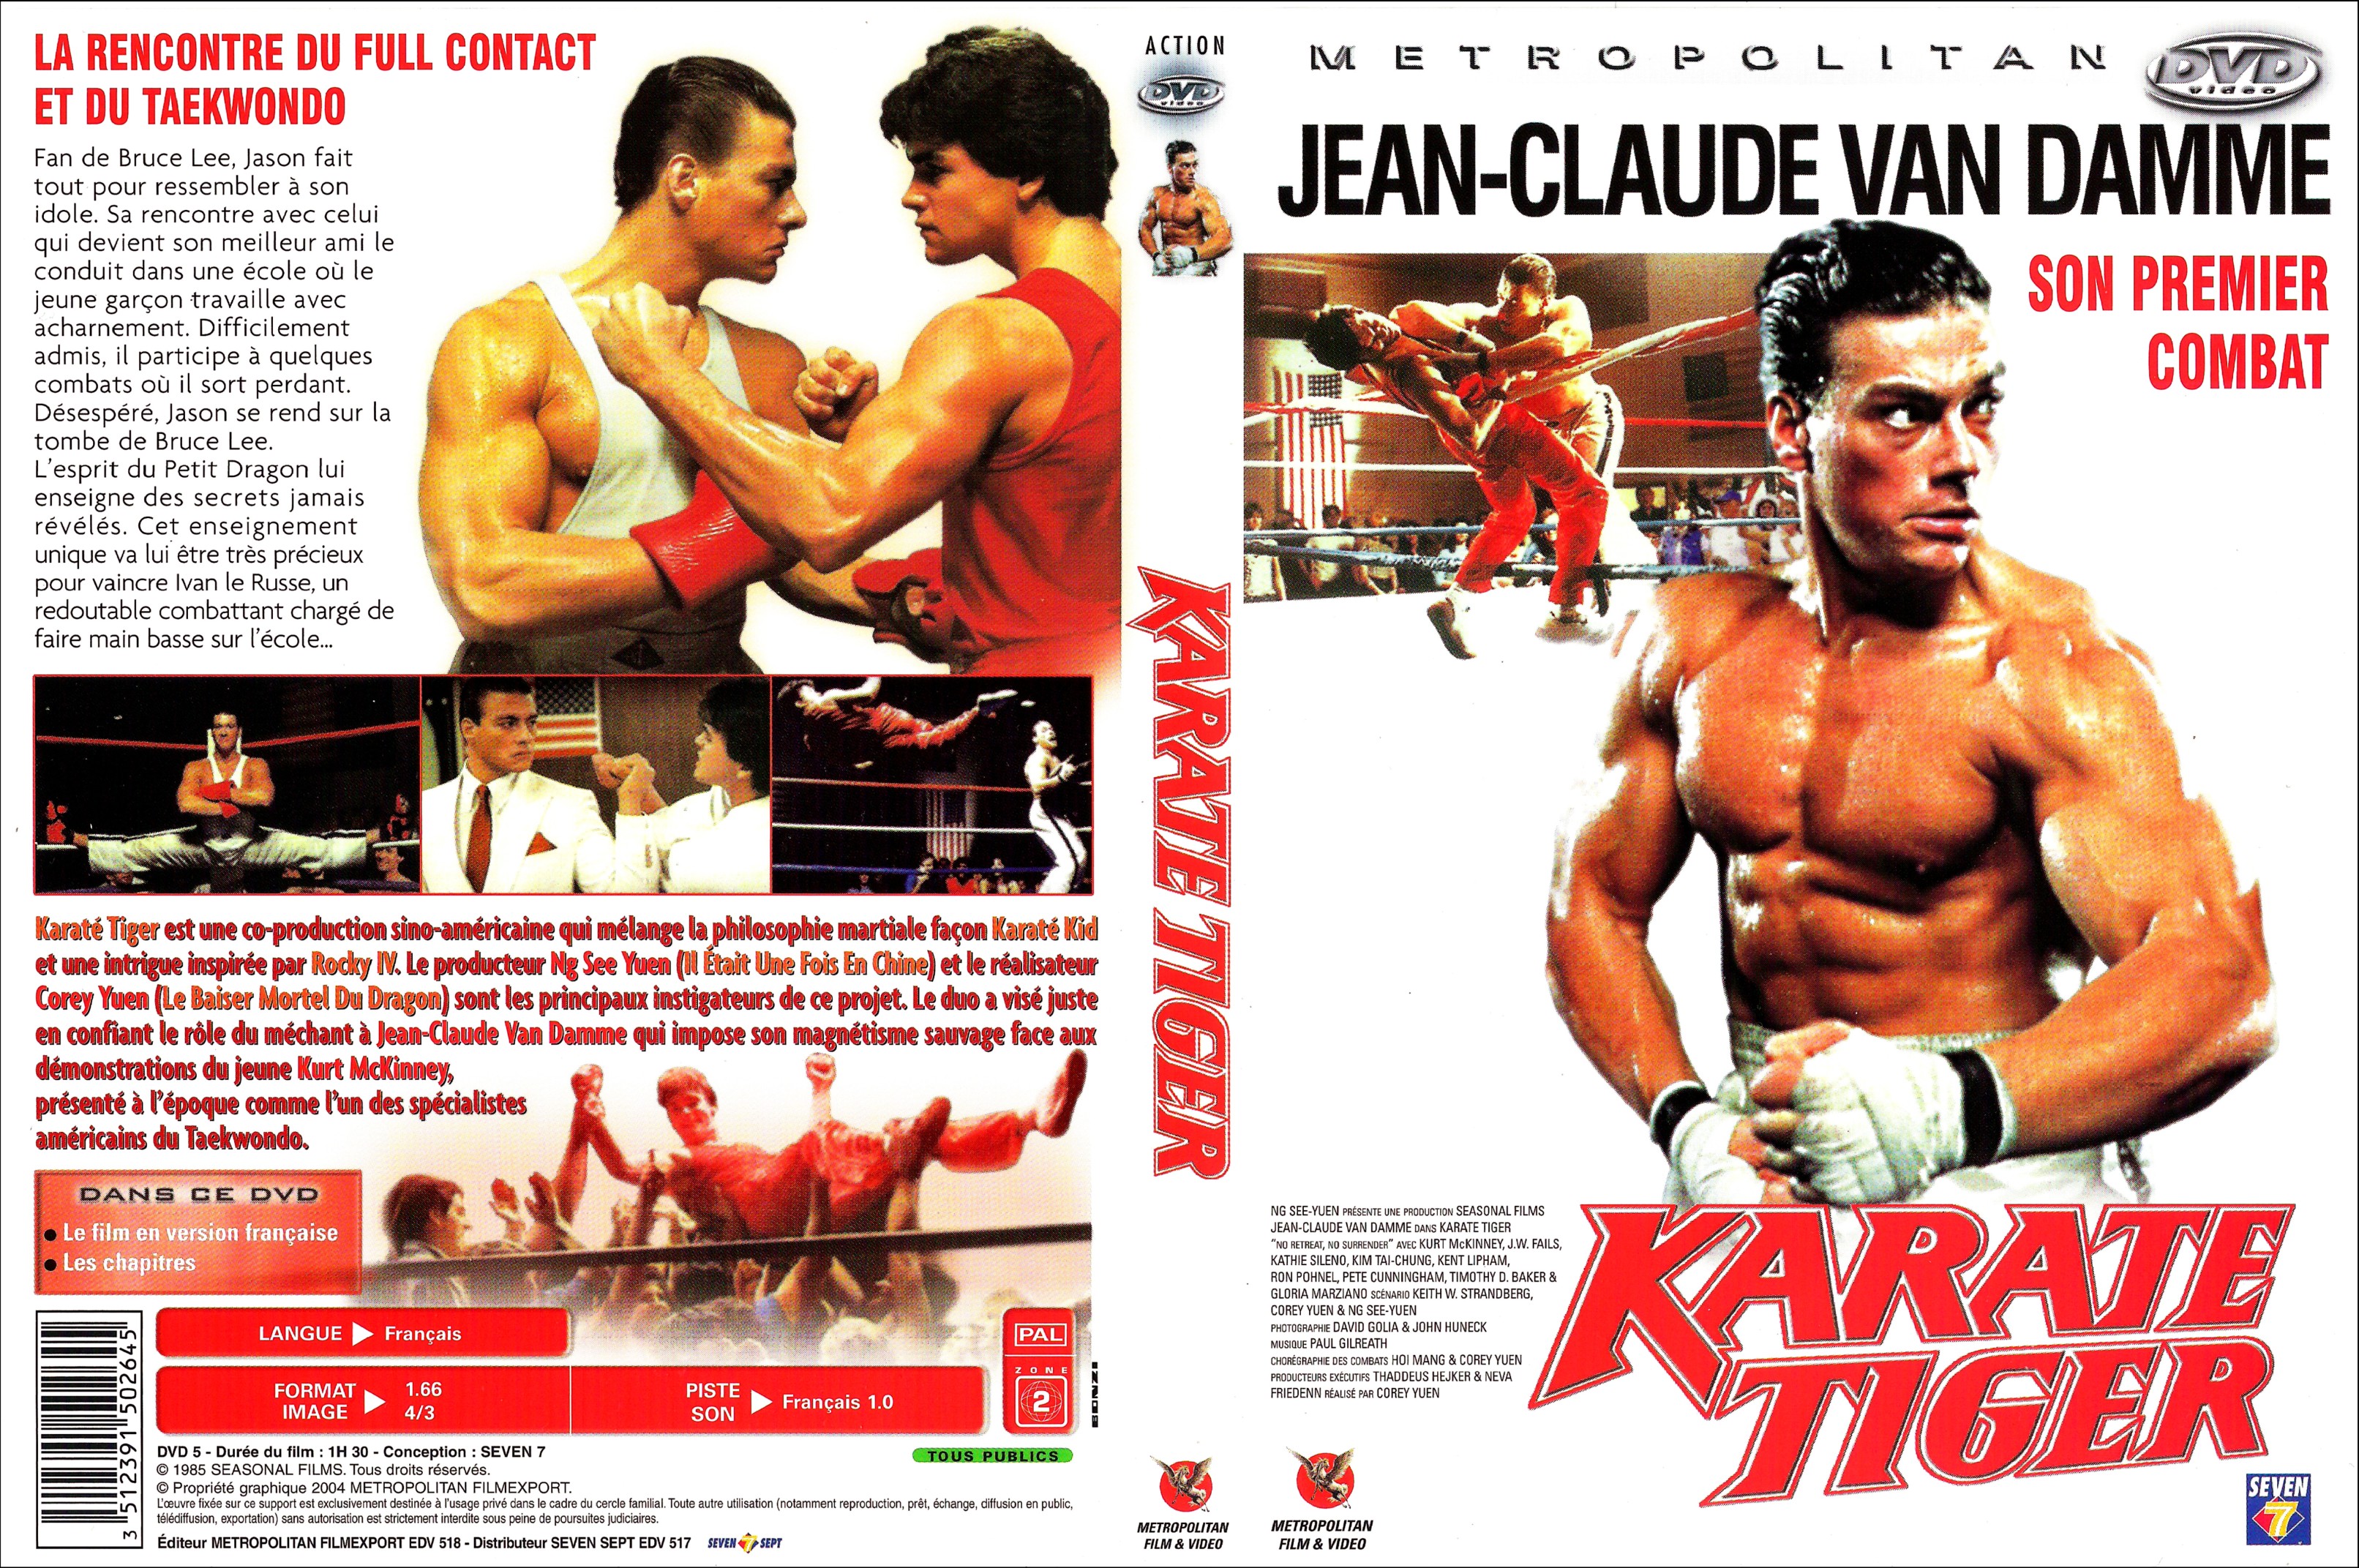 Jaquette DVD Karate tiger